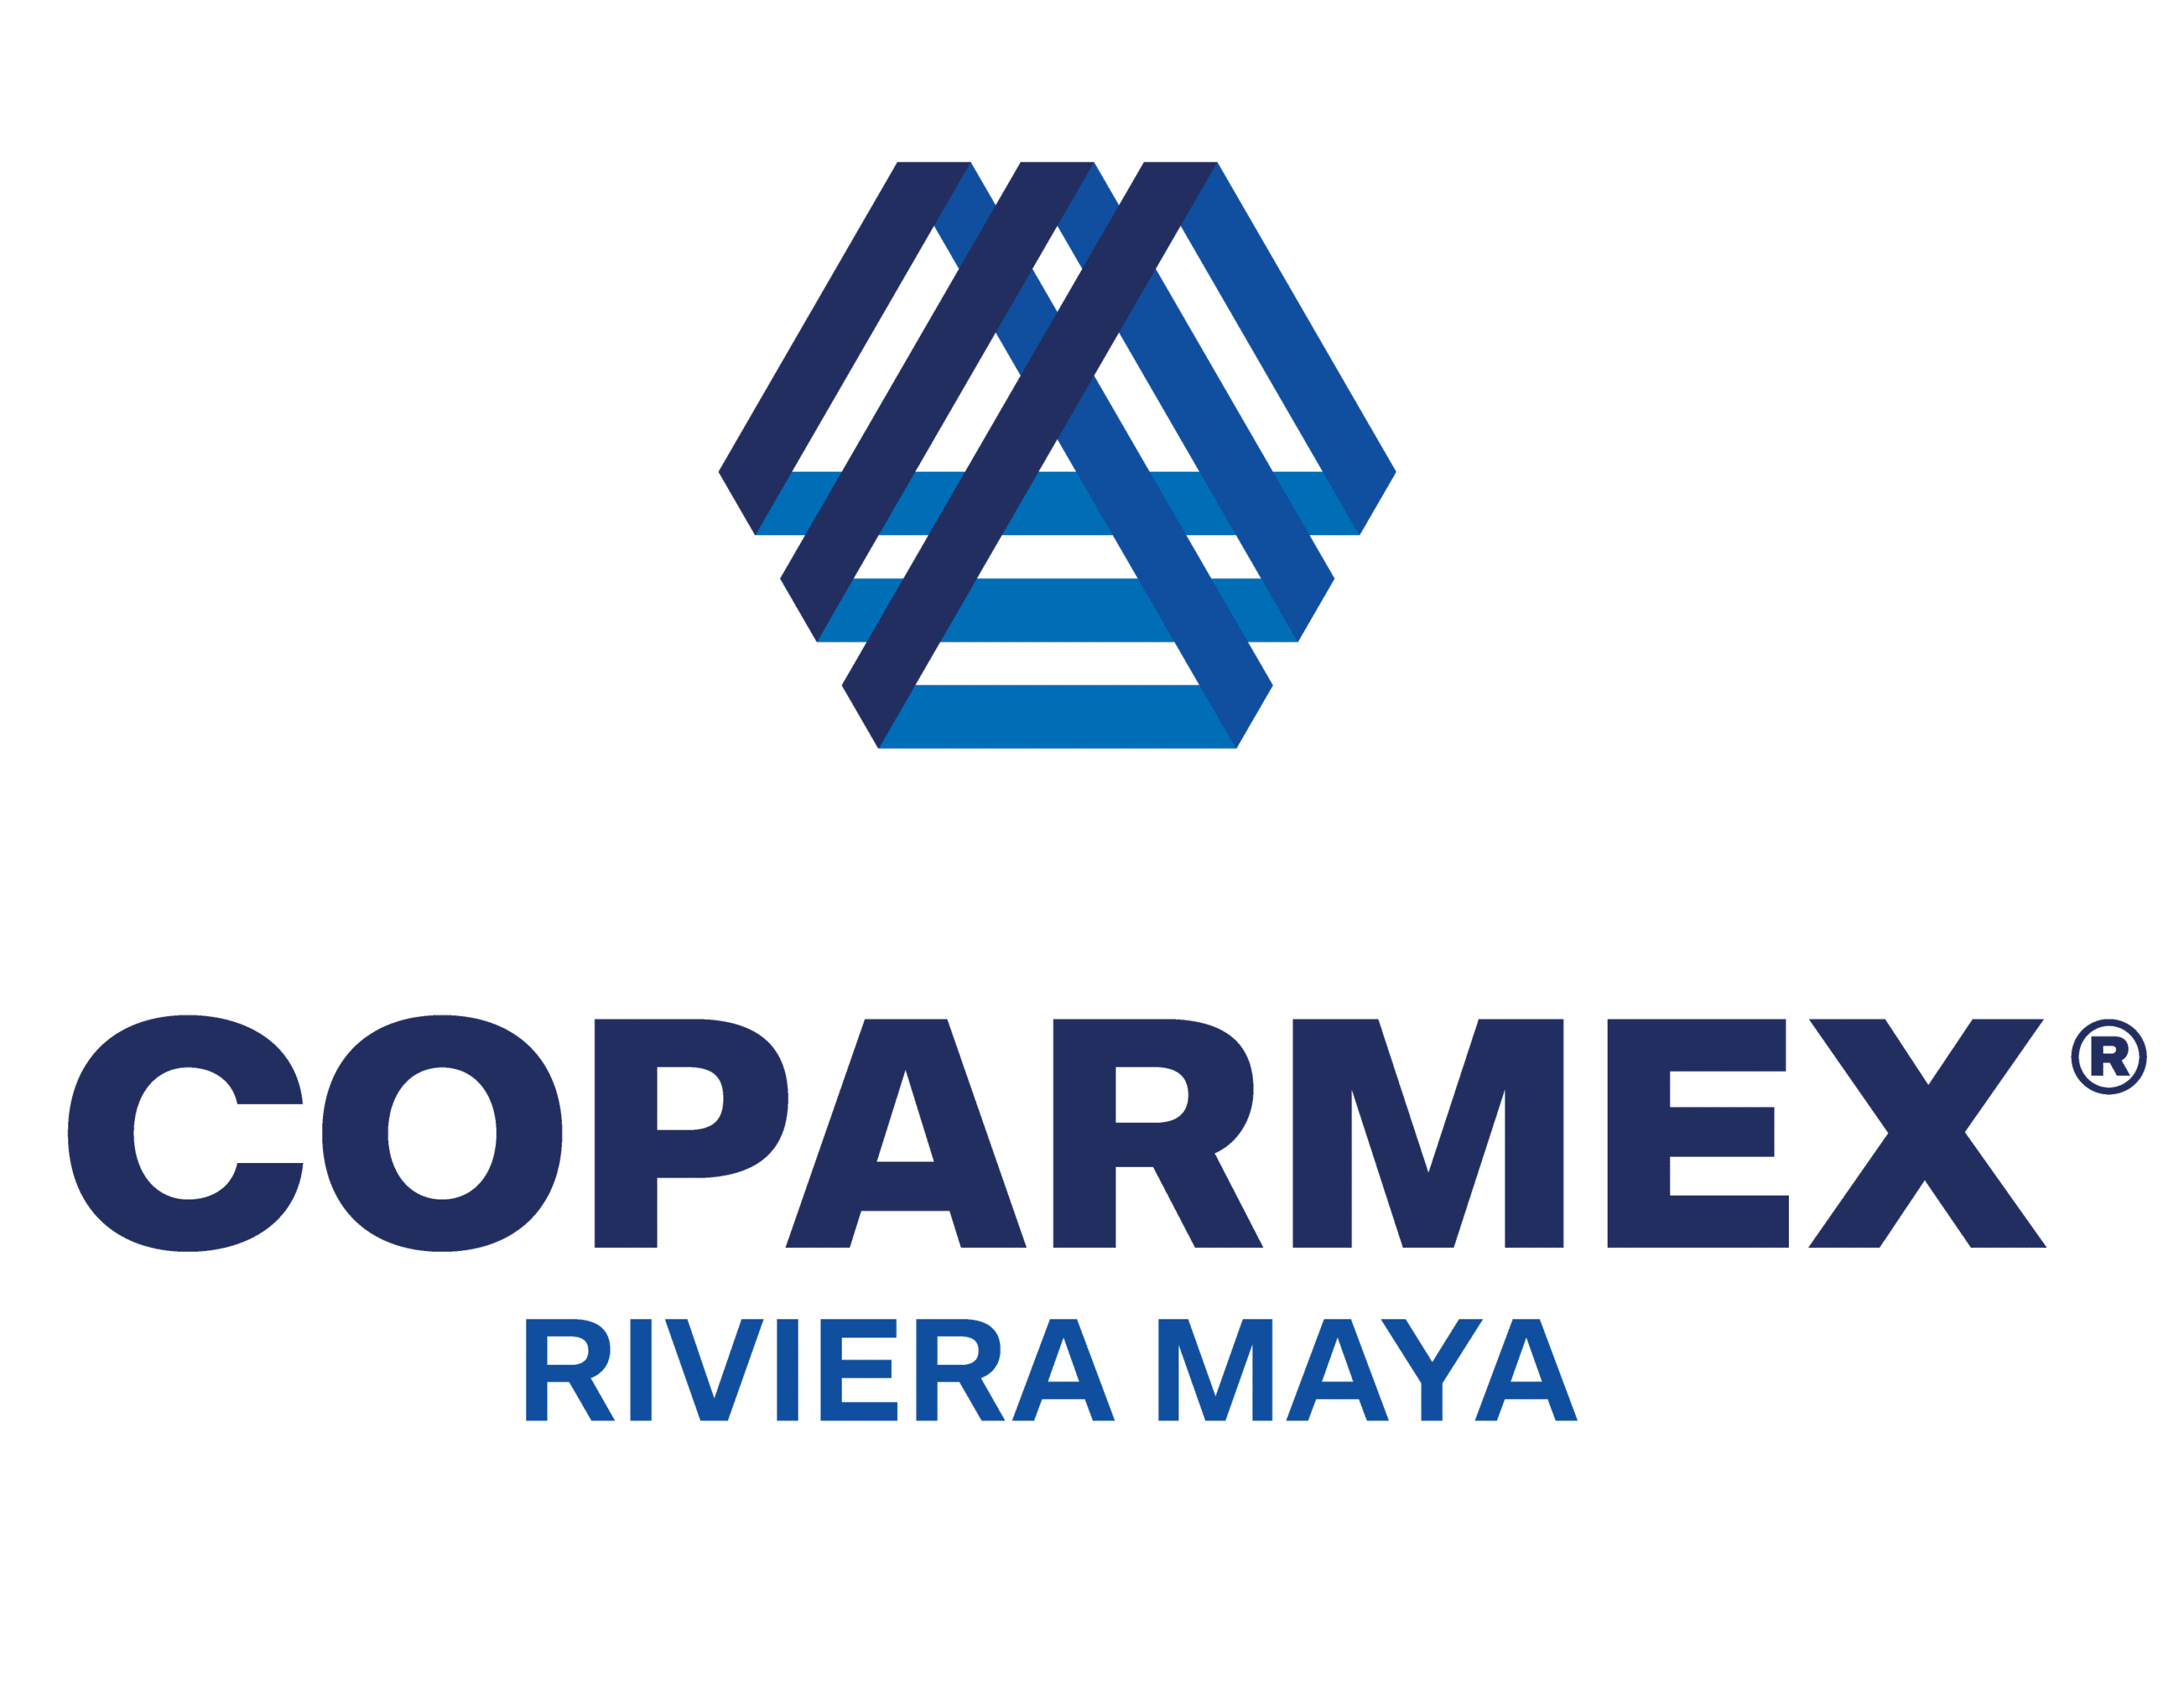 Coparmex Logo